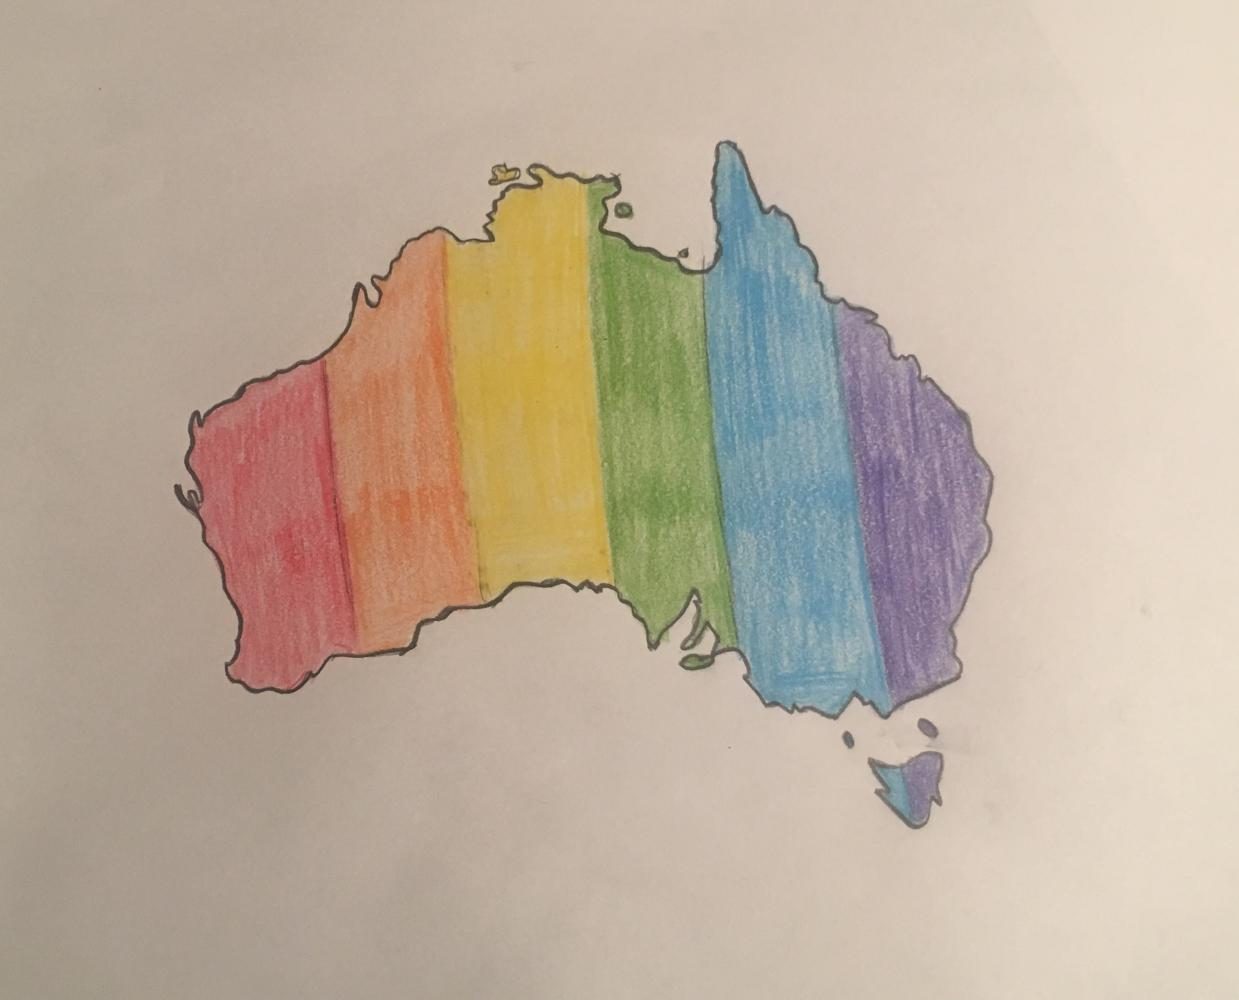 Australia votes ‘yes’ on same-sex marriage